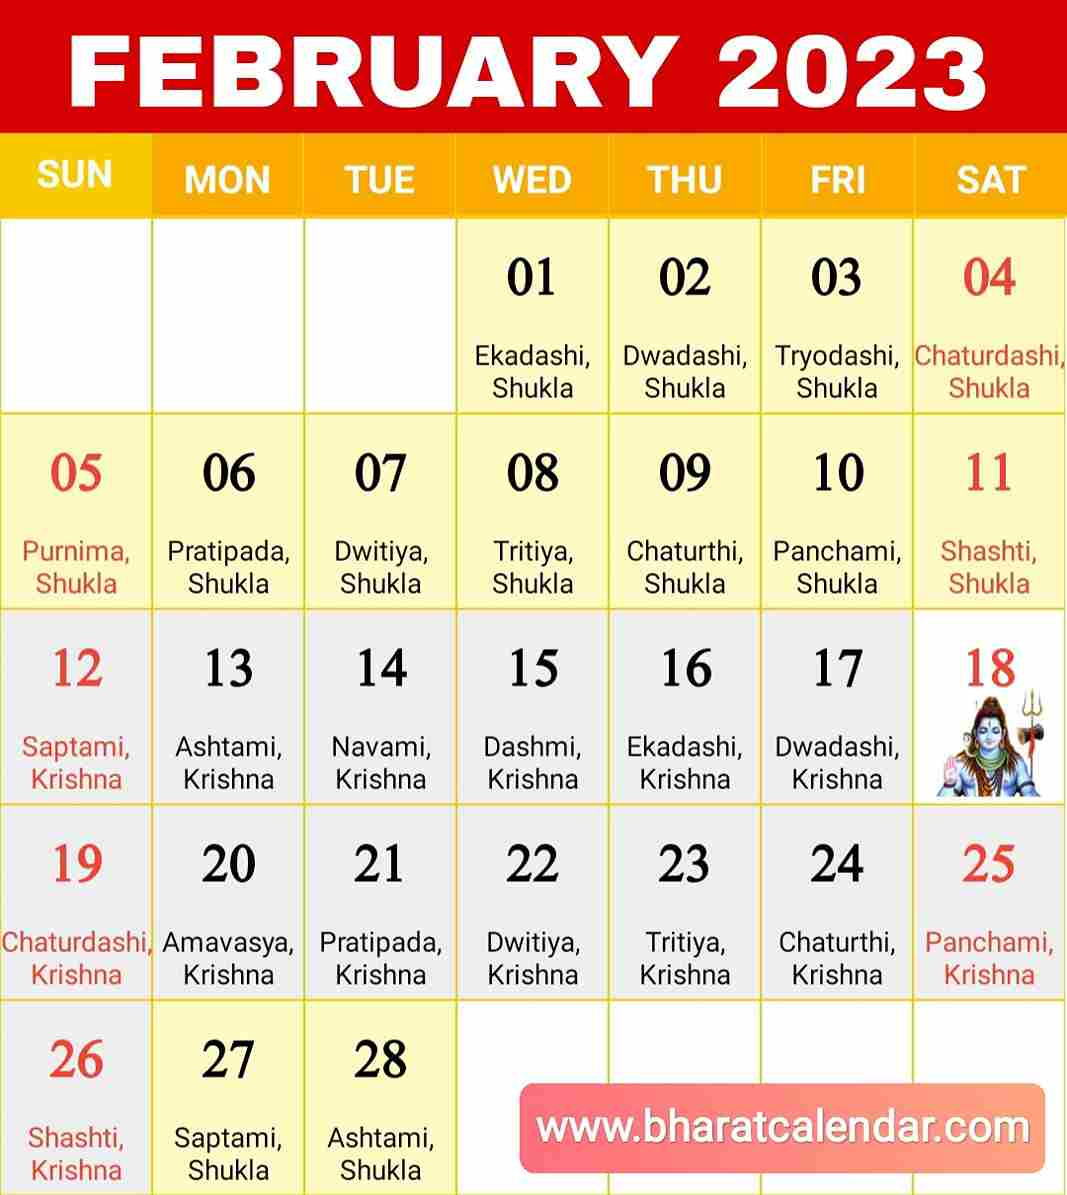 February Calendar 2023 February Calendar 2023 Festival And Holidays